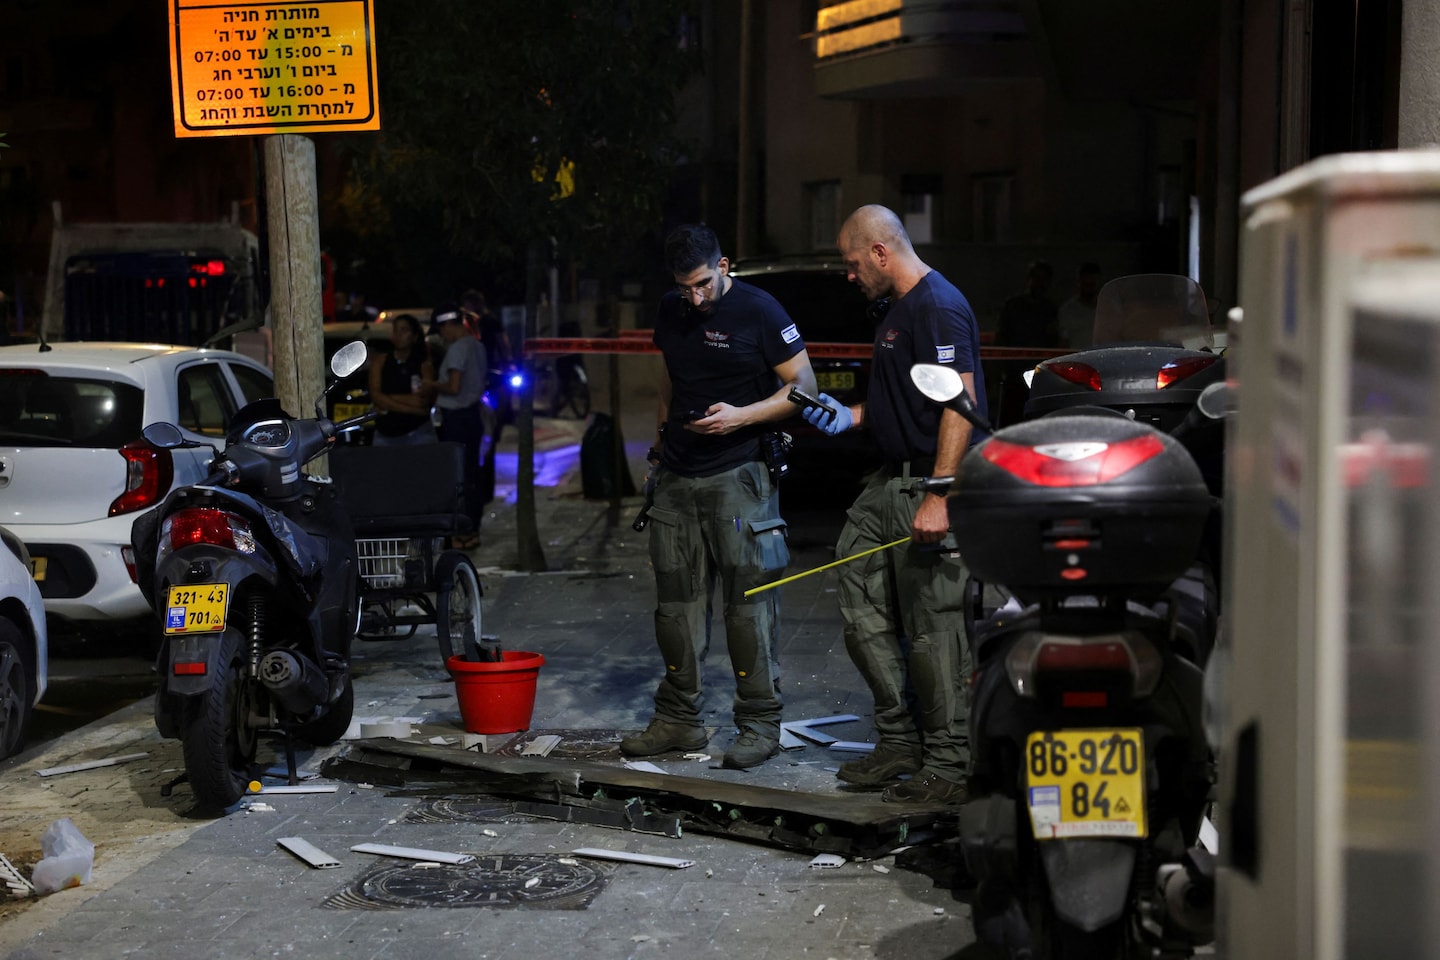 Explosion near U.S. Embassy office in Tel Aviv kills 1, injures 7